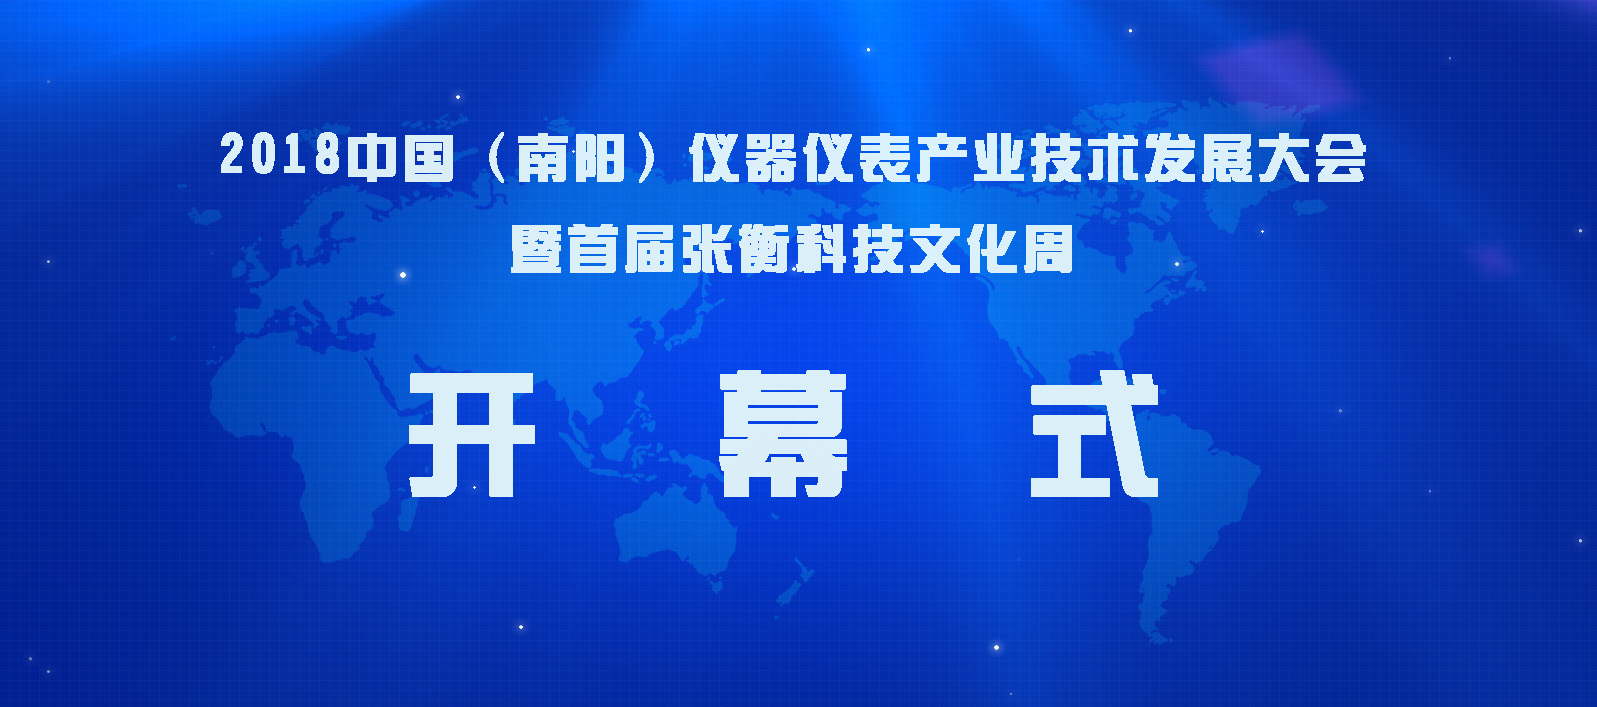 广东东崎参加2018中国(南阳)仪器仪表产业技术发展大会